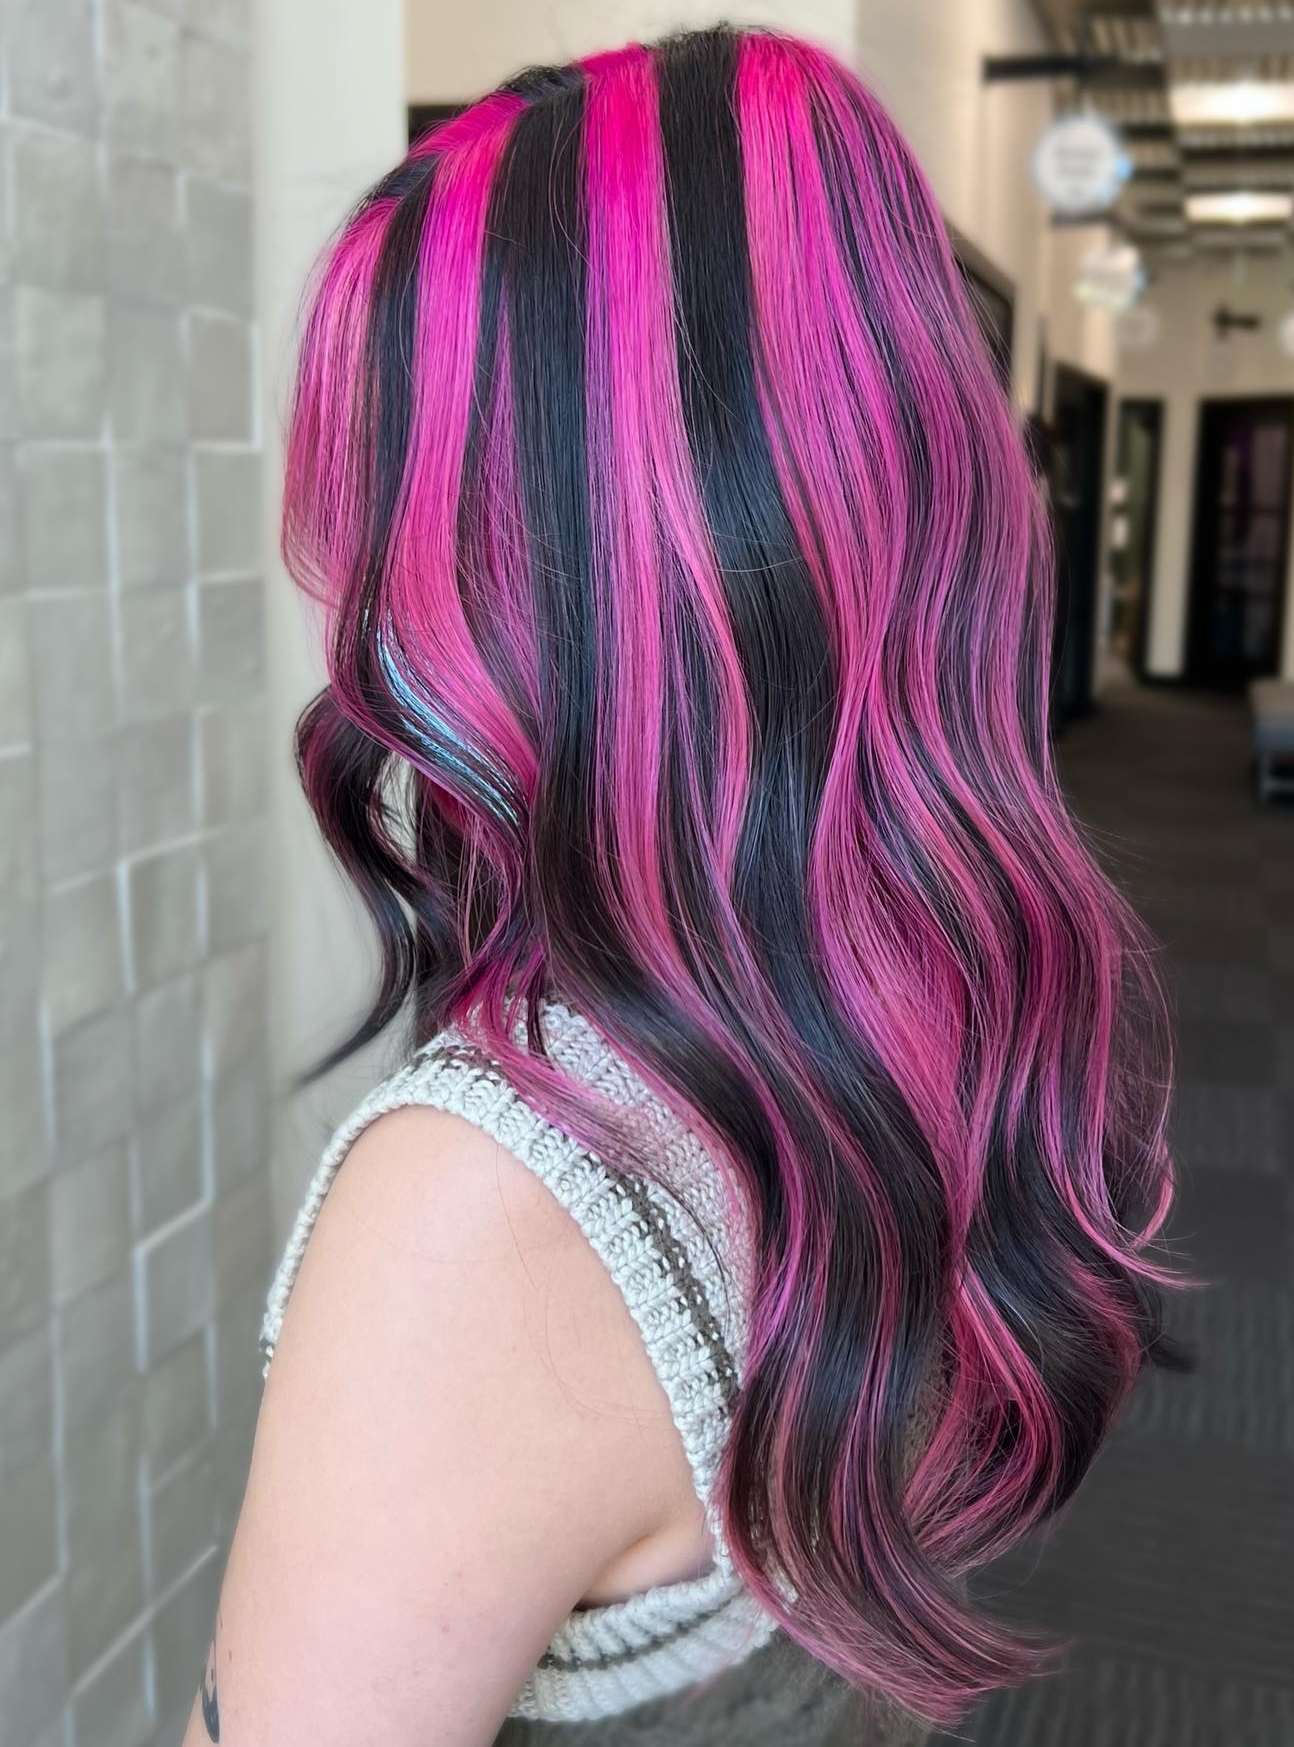 Pink and Black Skunk Stripe Hair